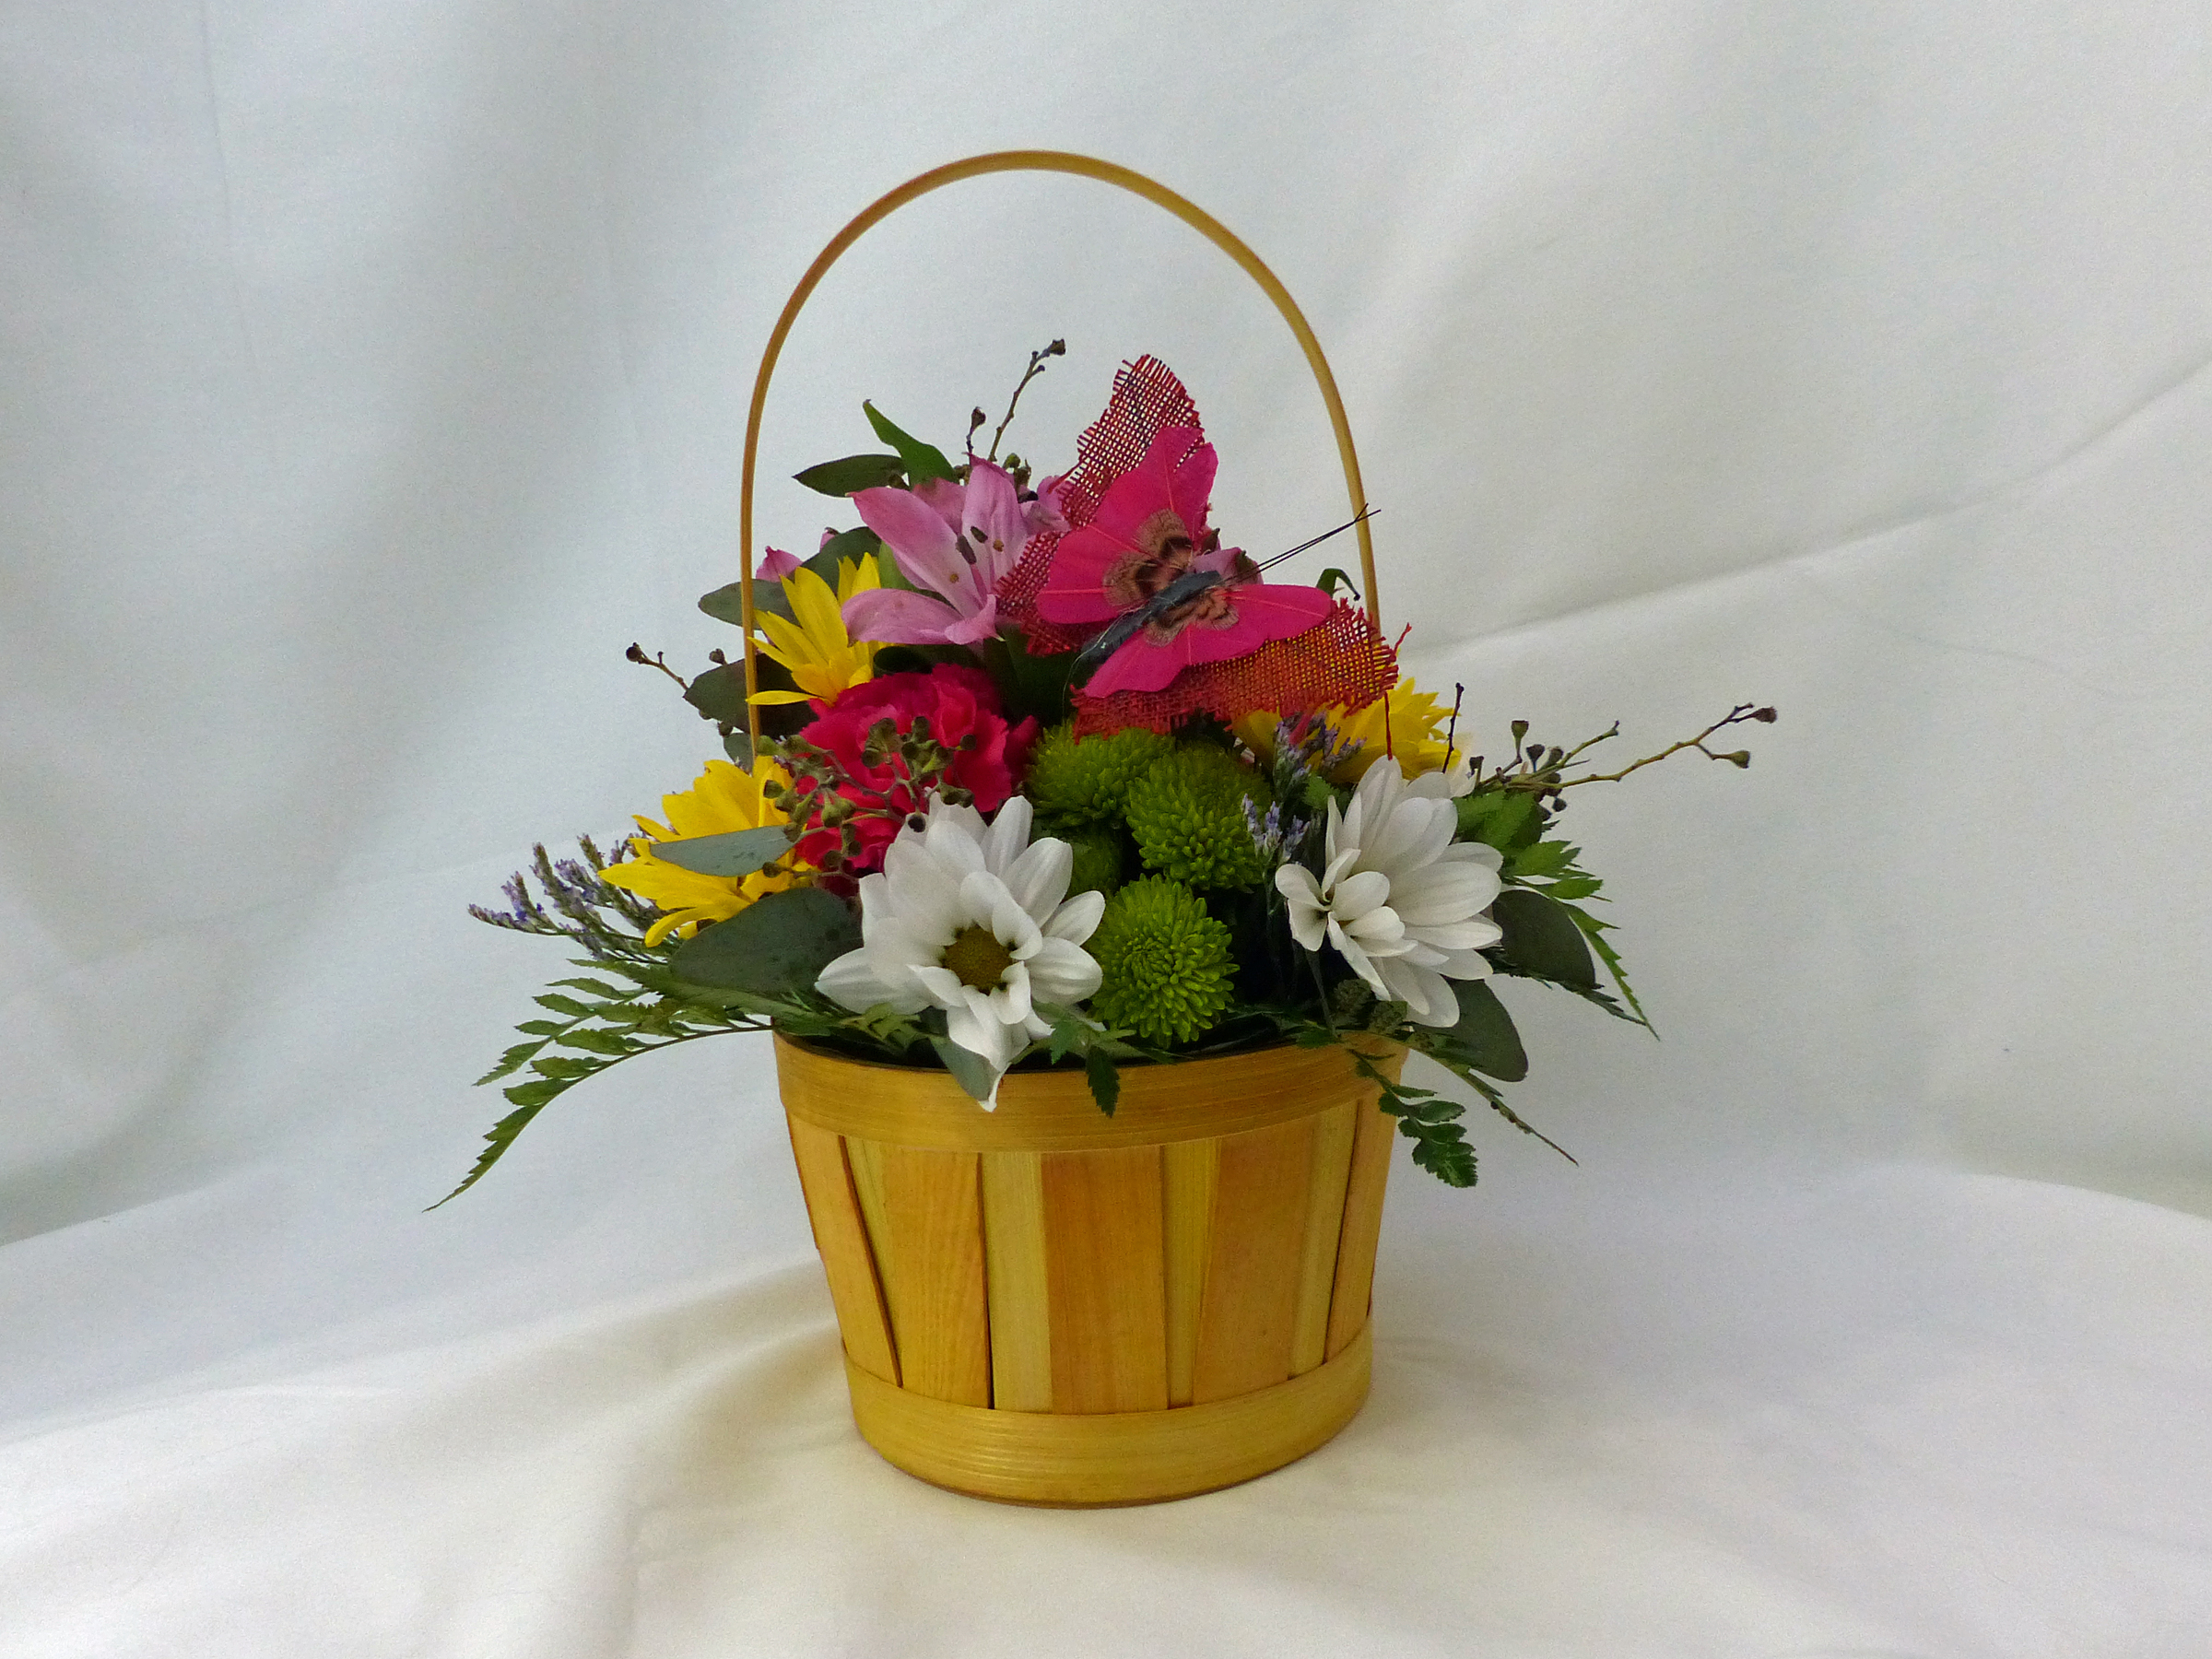 21 Apr A basket of beauty